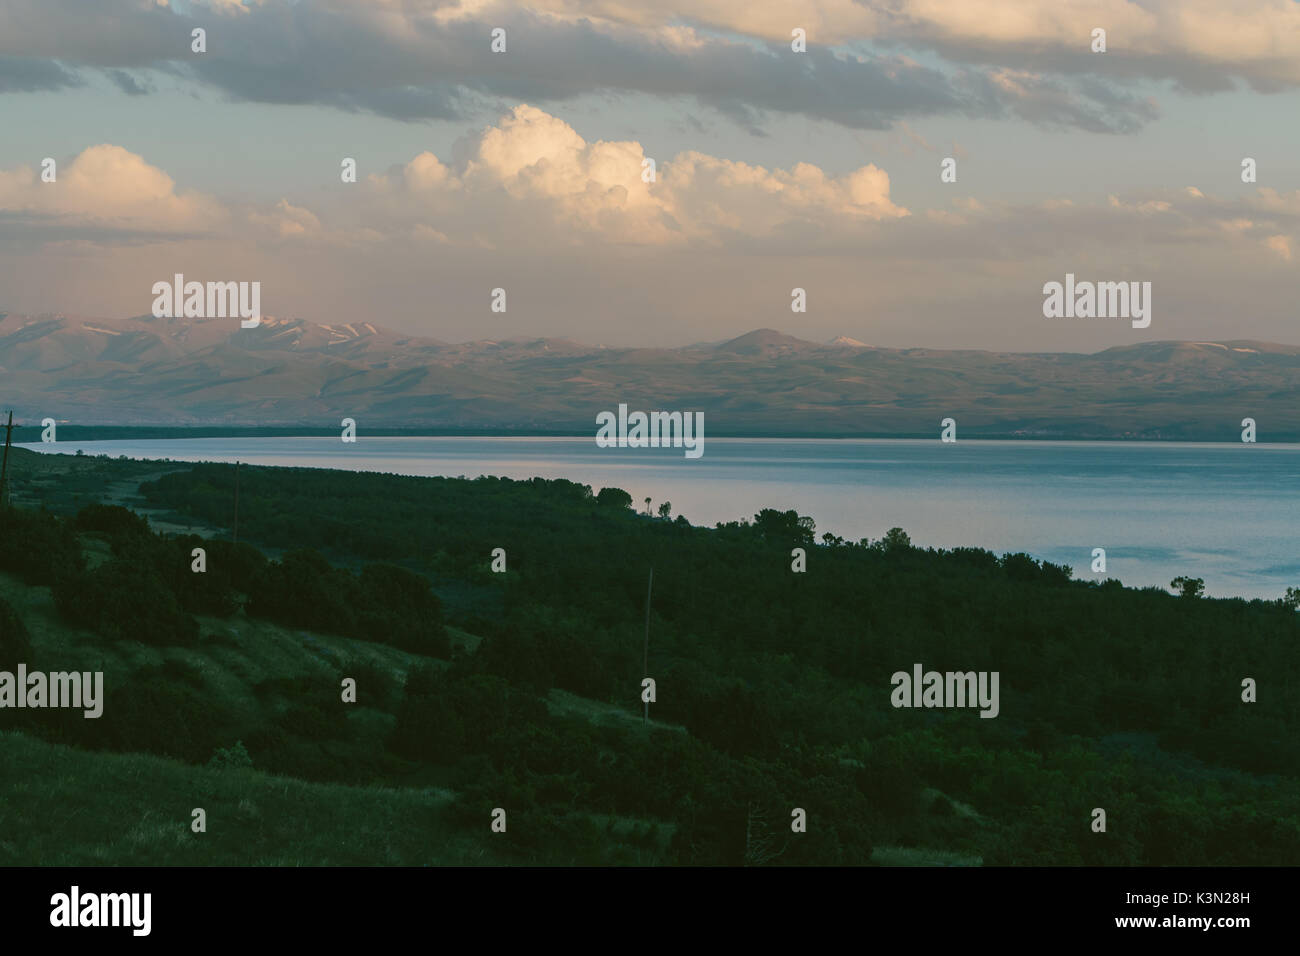 Lake Sevan, Armenia Stock Photo